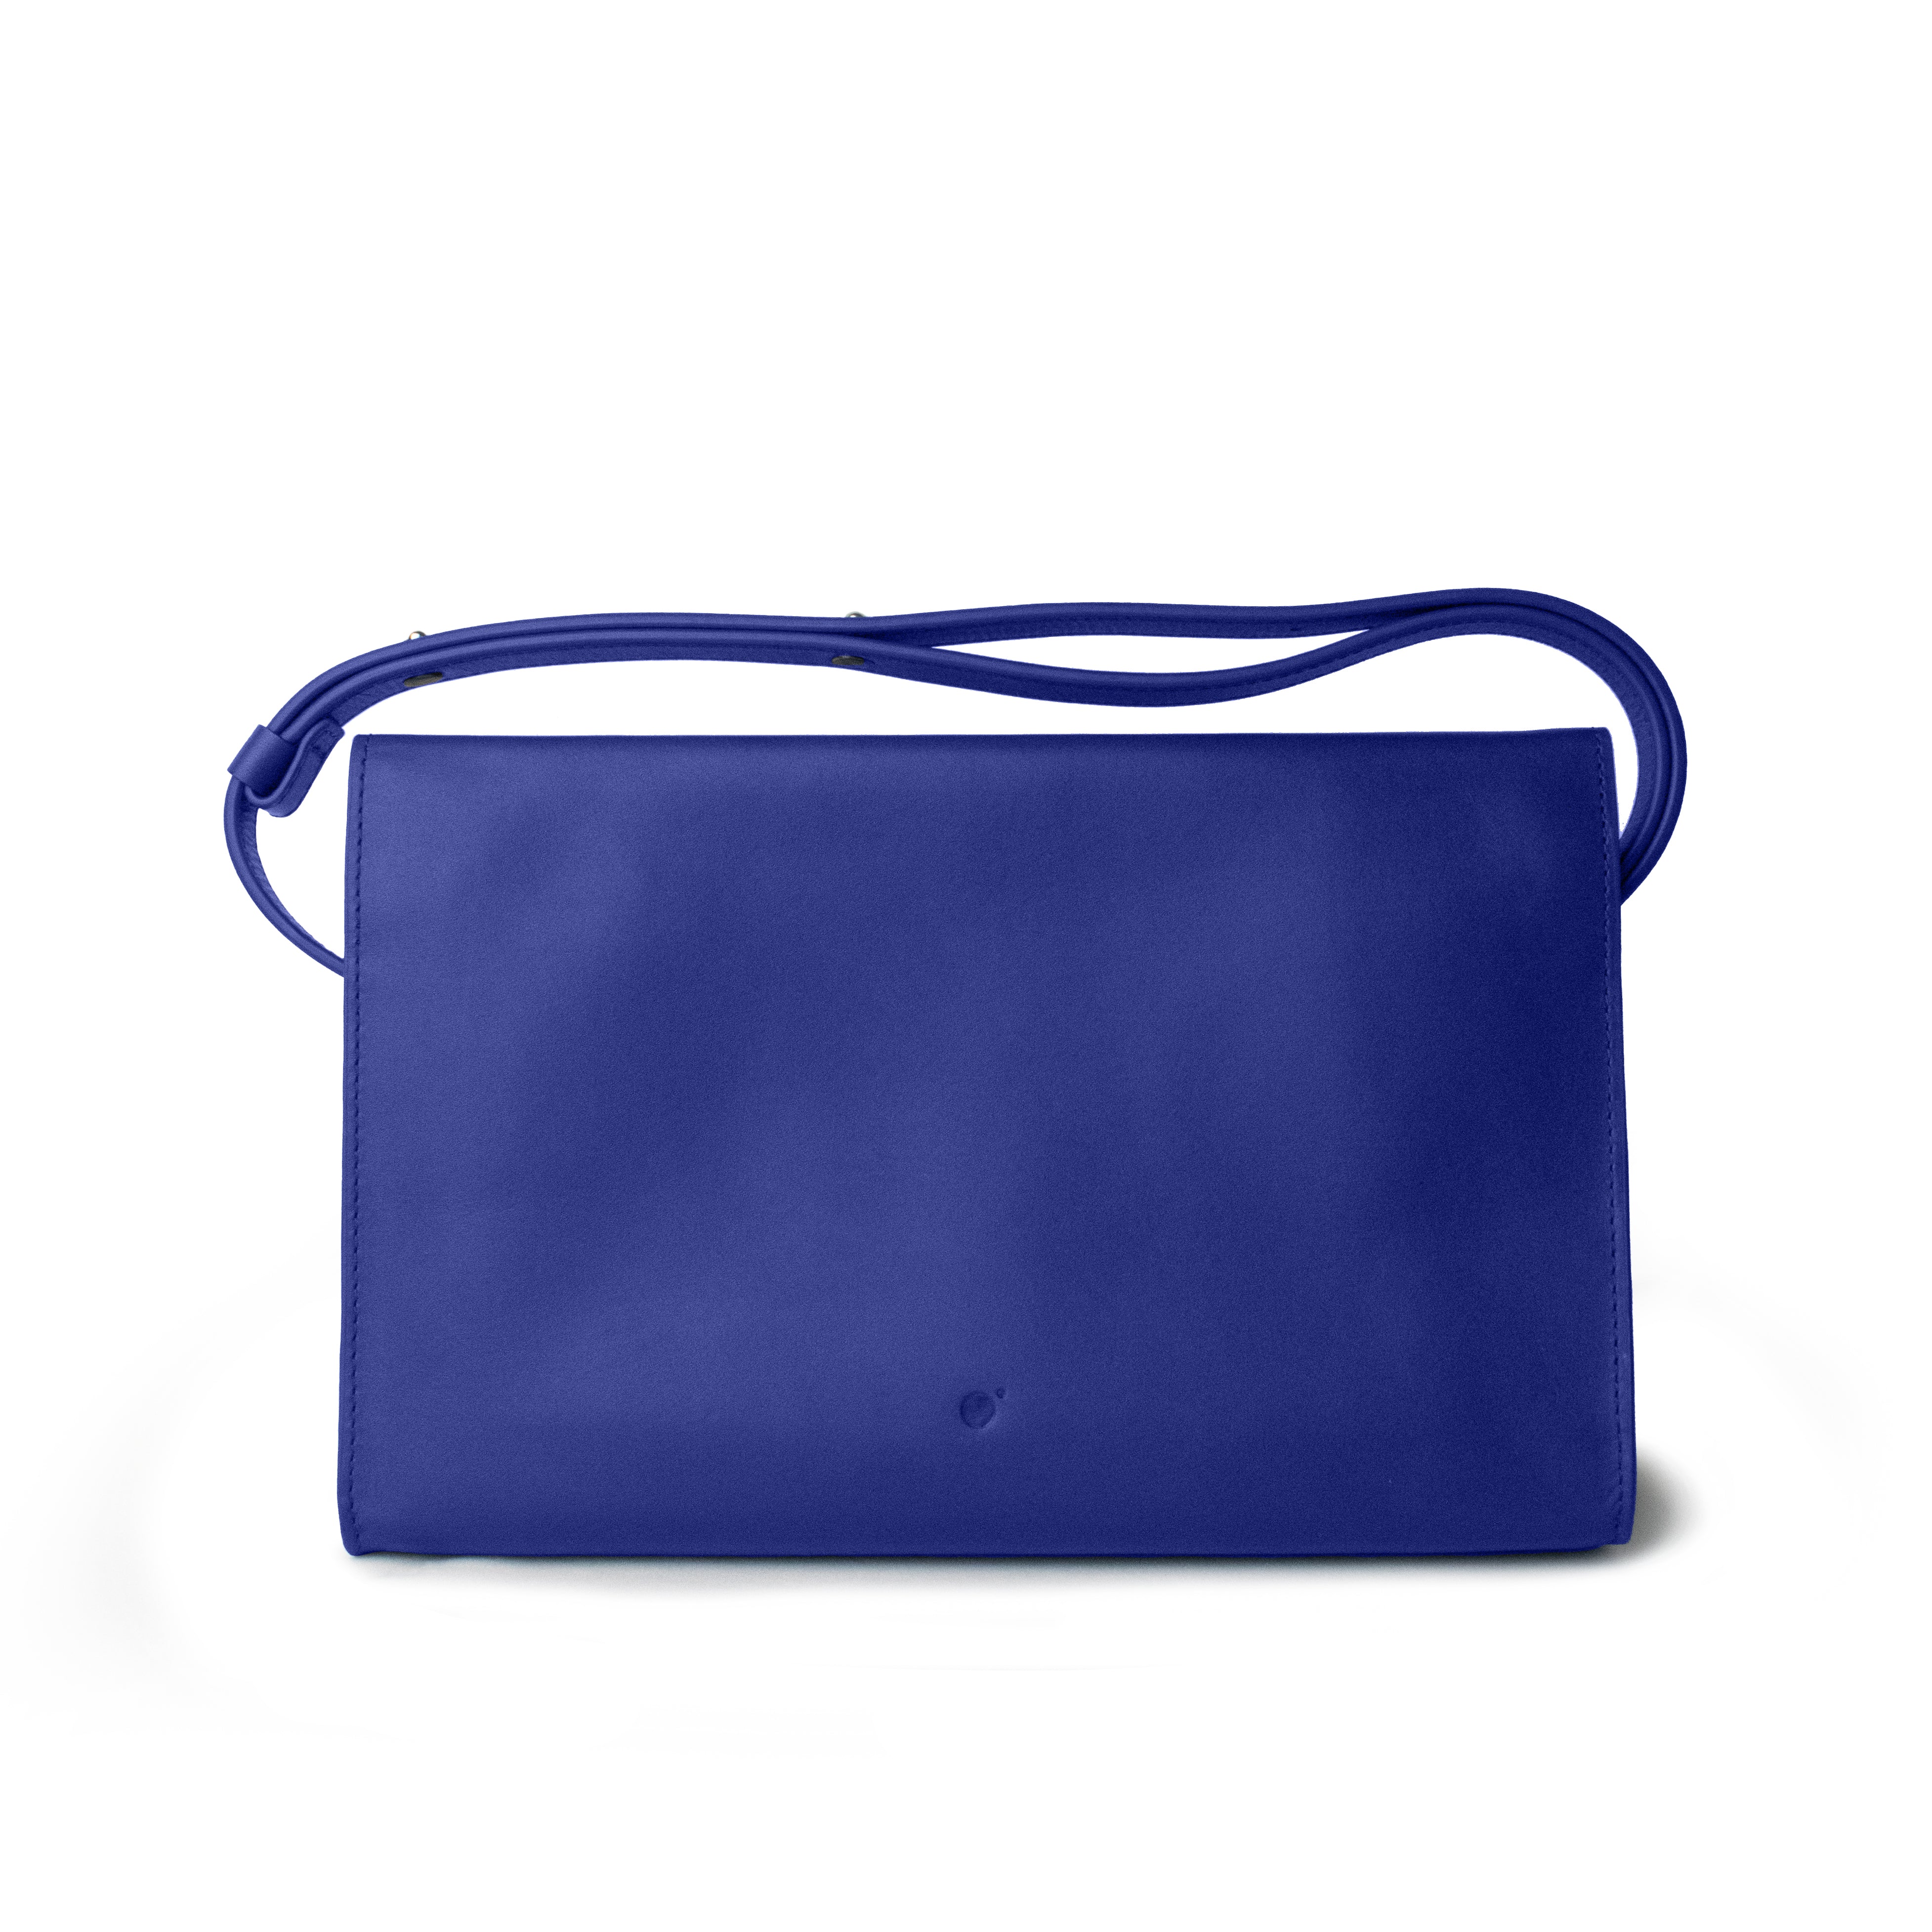 Adjustable Shoulder Bag in Cobalt Blue